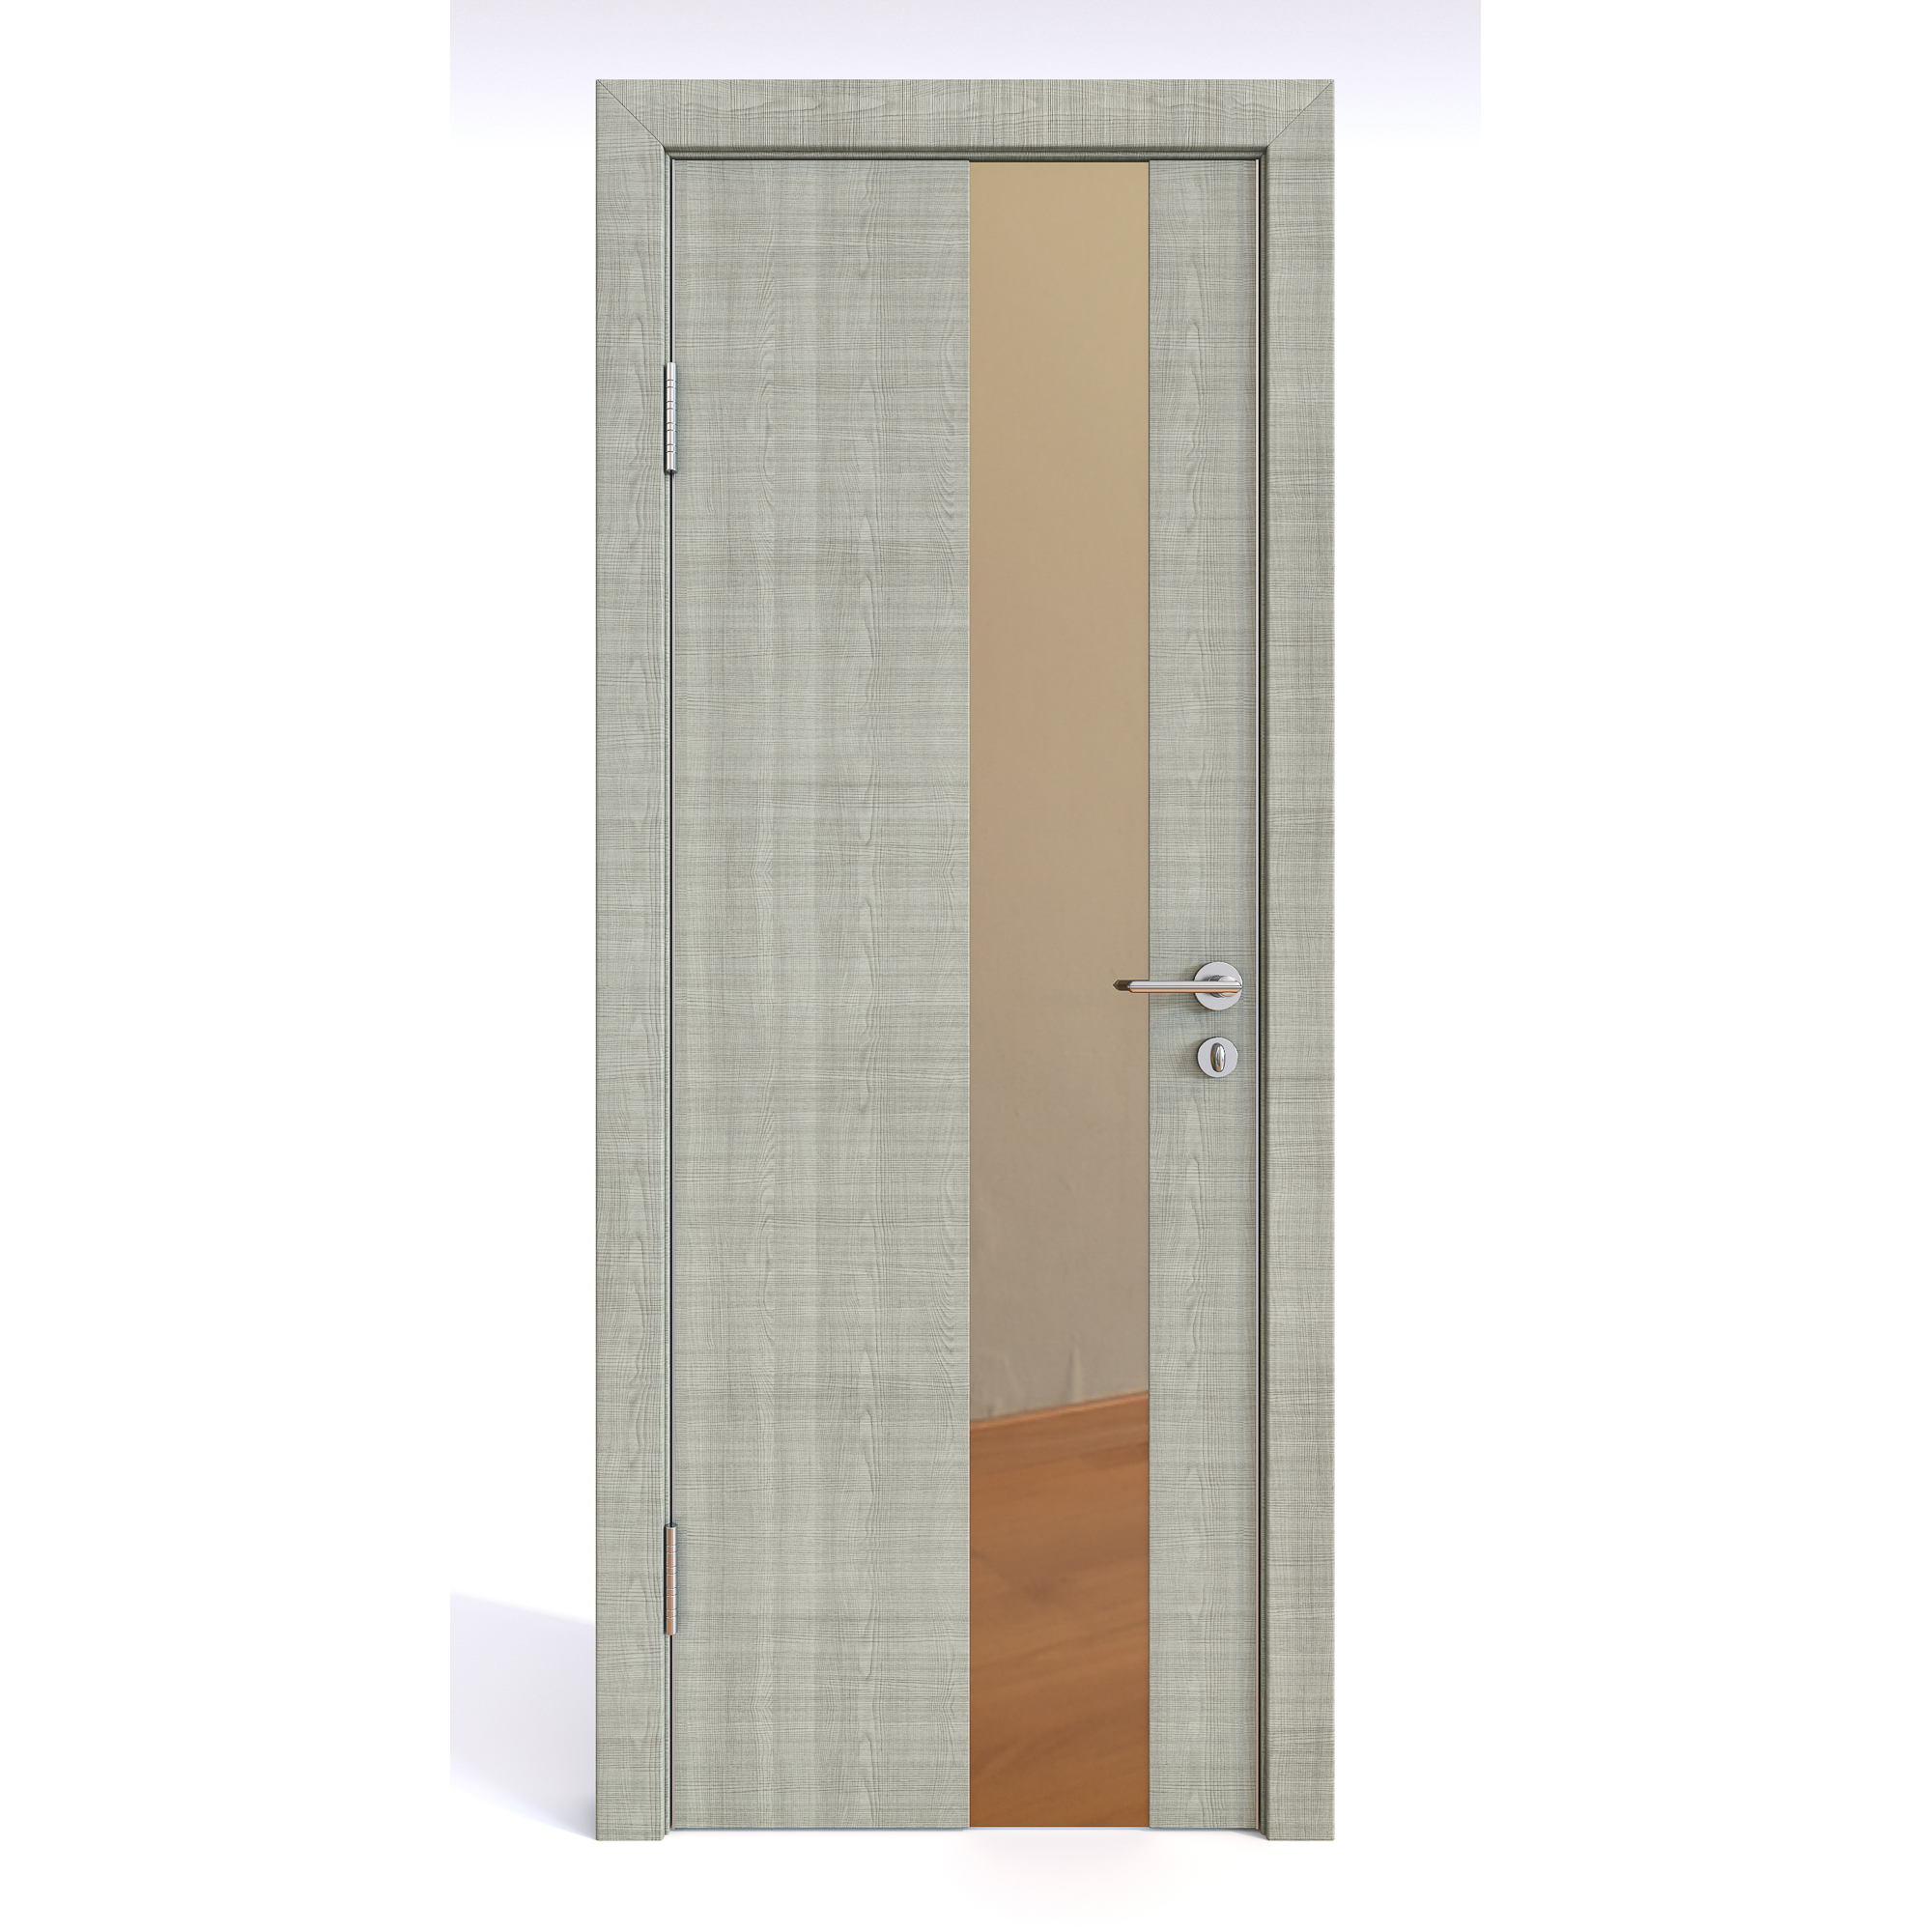 фото Межкомнатная шумоизоляционная дверь до-604 серый дуб/бронза 200х80 дверная линия